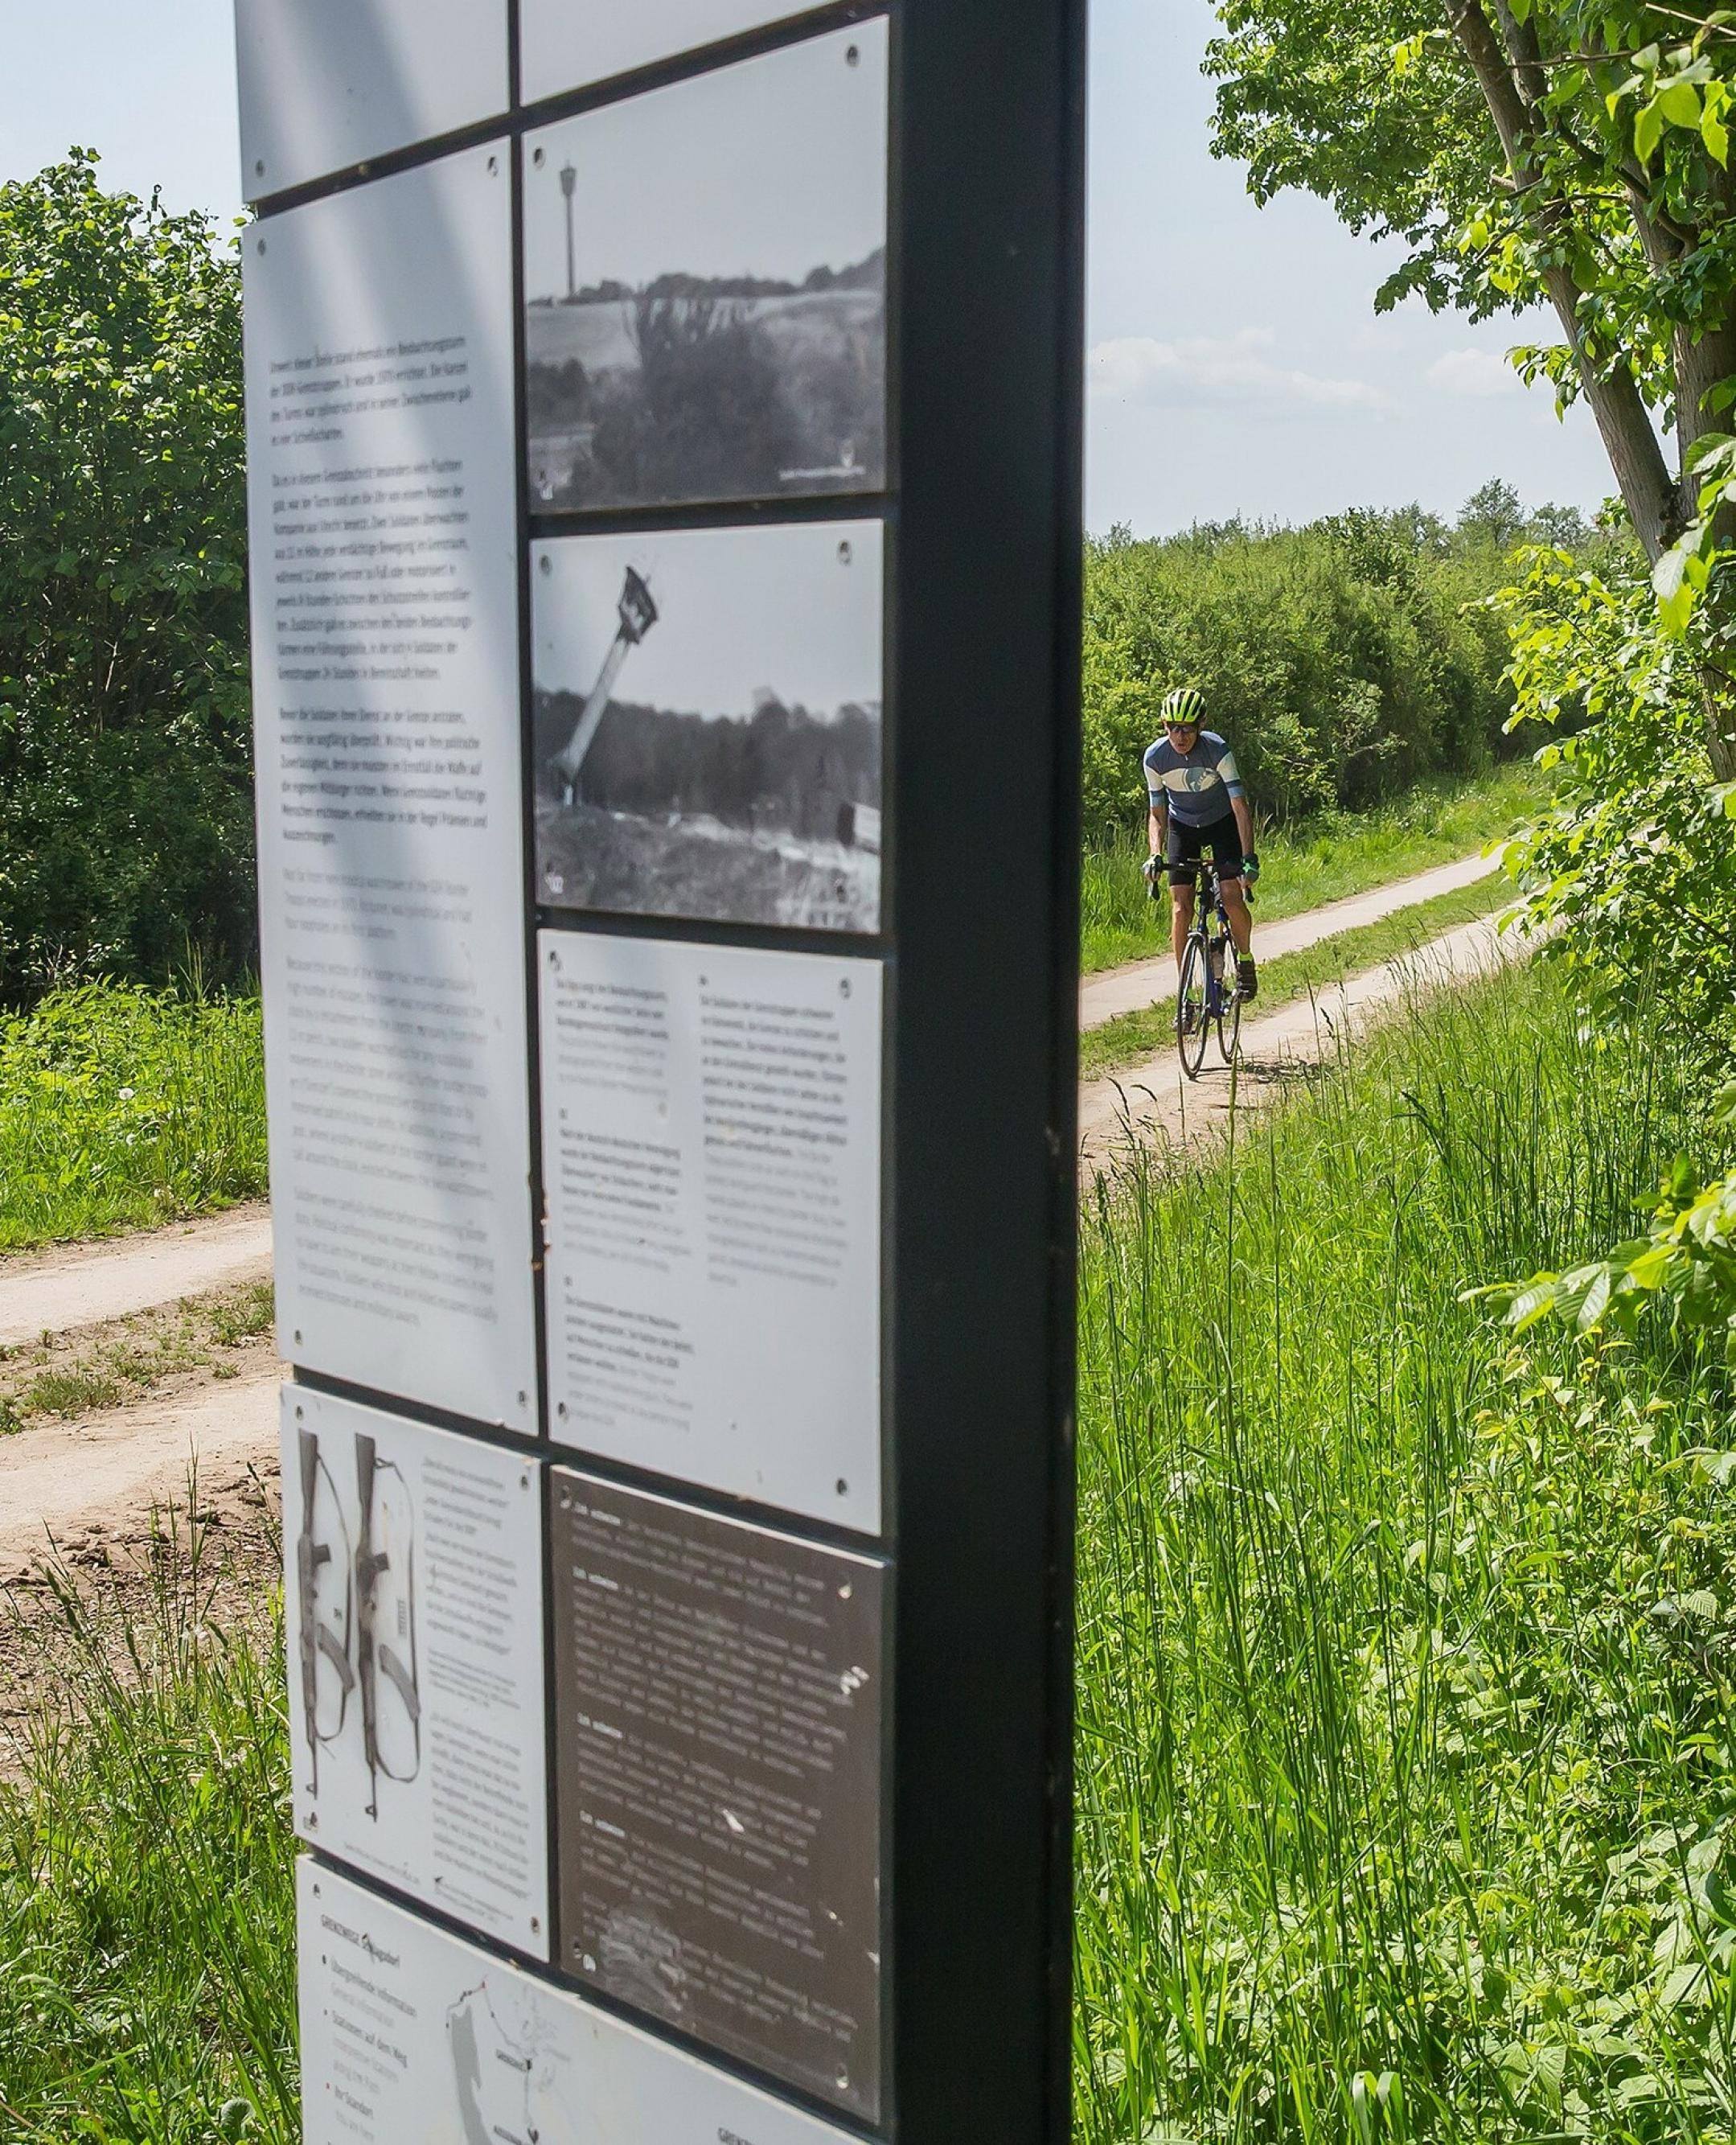 Martin C Roos fährt mit dem Rennrad auf einem alten Kolonnenweg, an dem – im Bildvordergrund – eine Schautafel des Museums zu sehen ist.